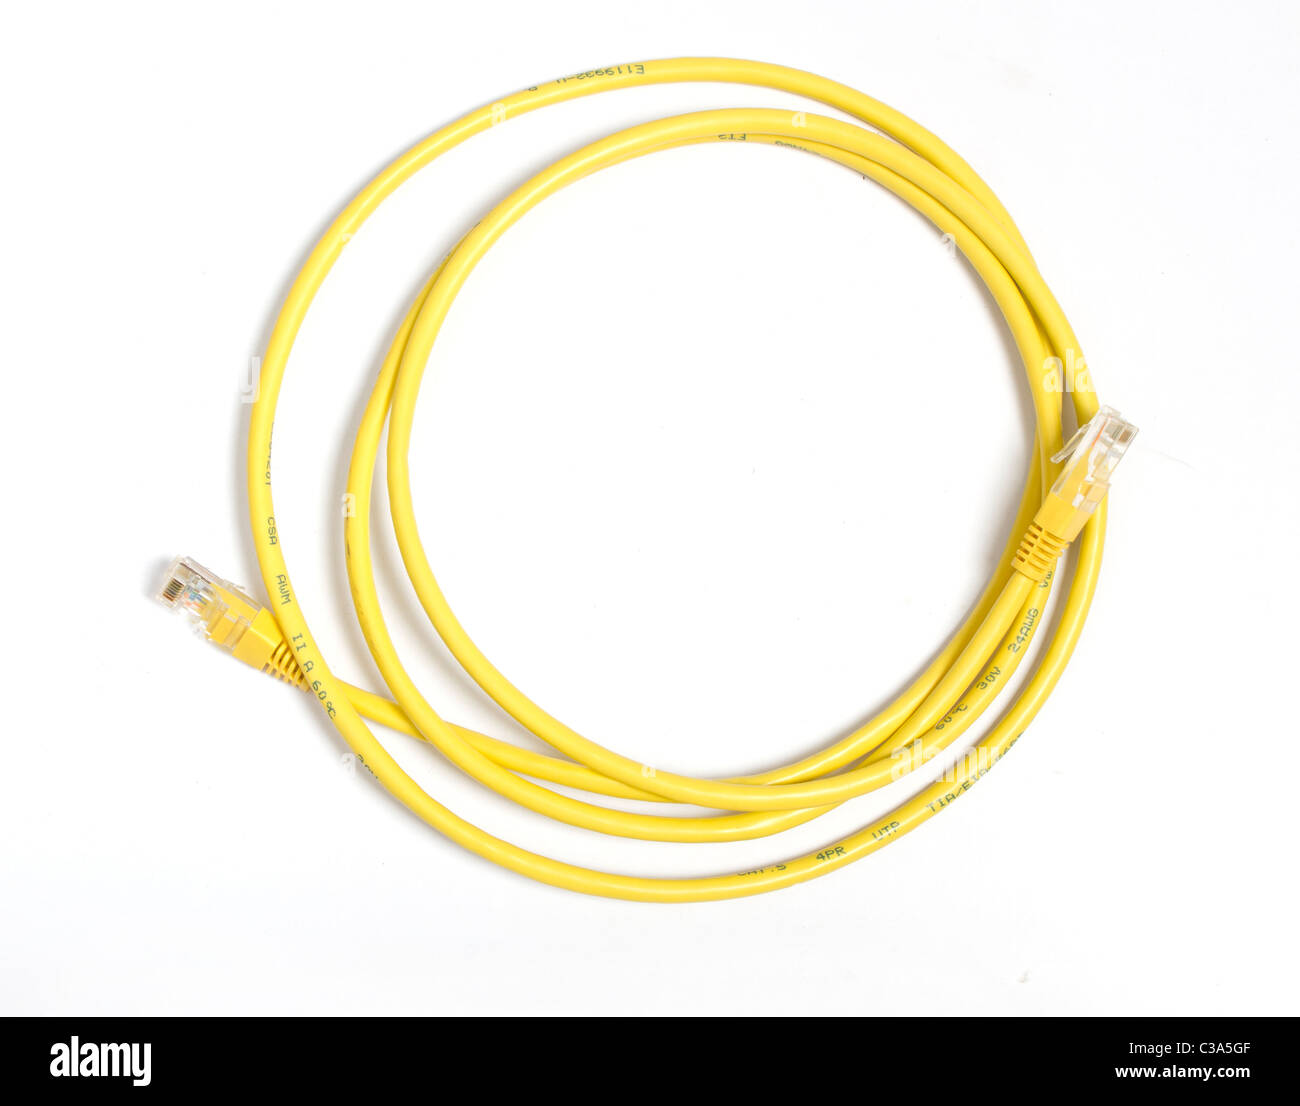 Câble réseau jaune avec connecteur RJ-45 Banque D'Images